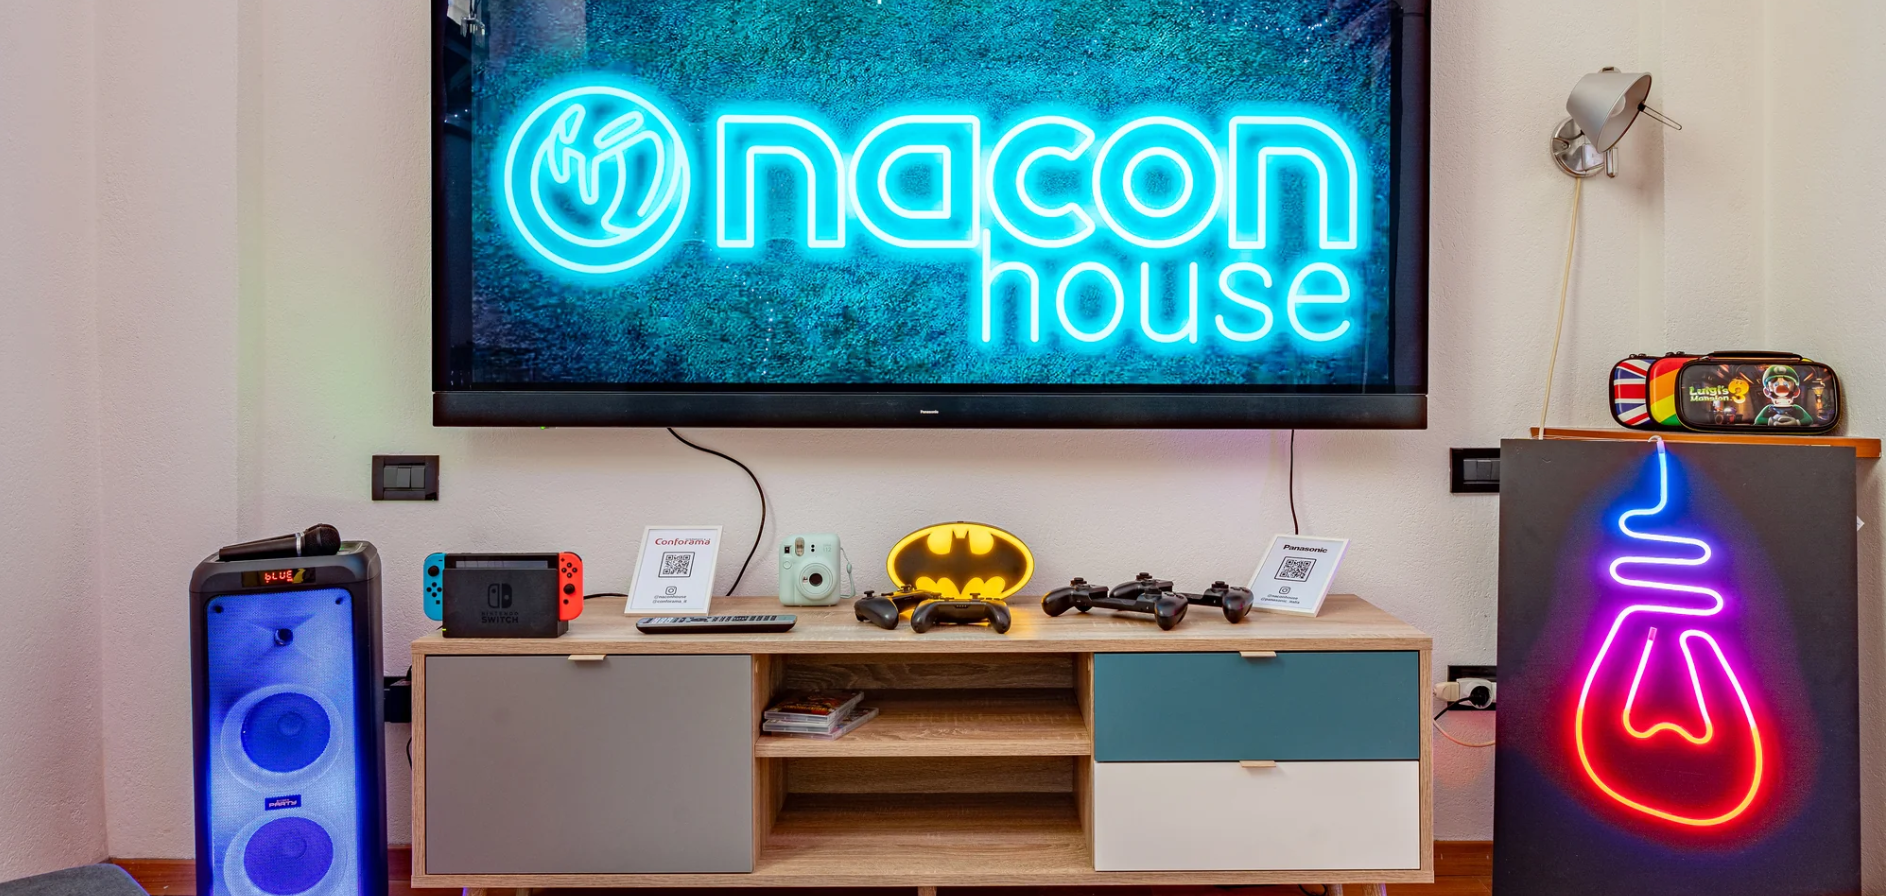 Nacon House